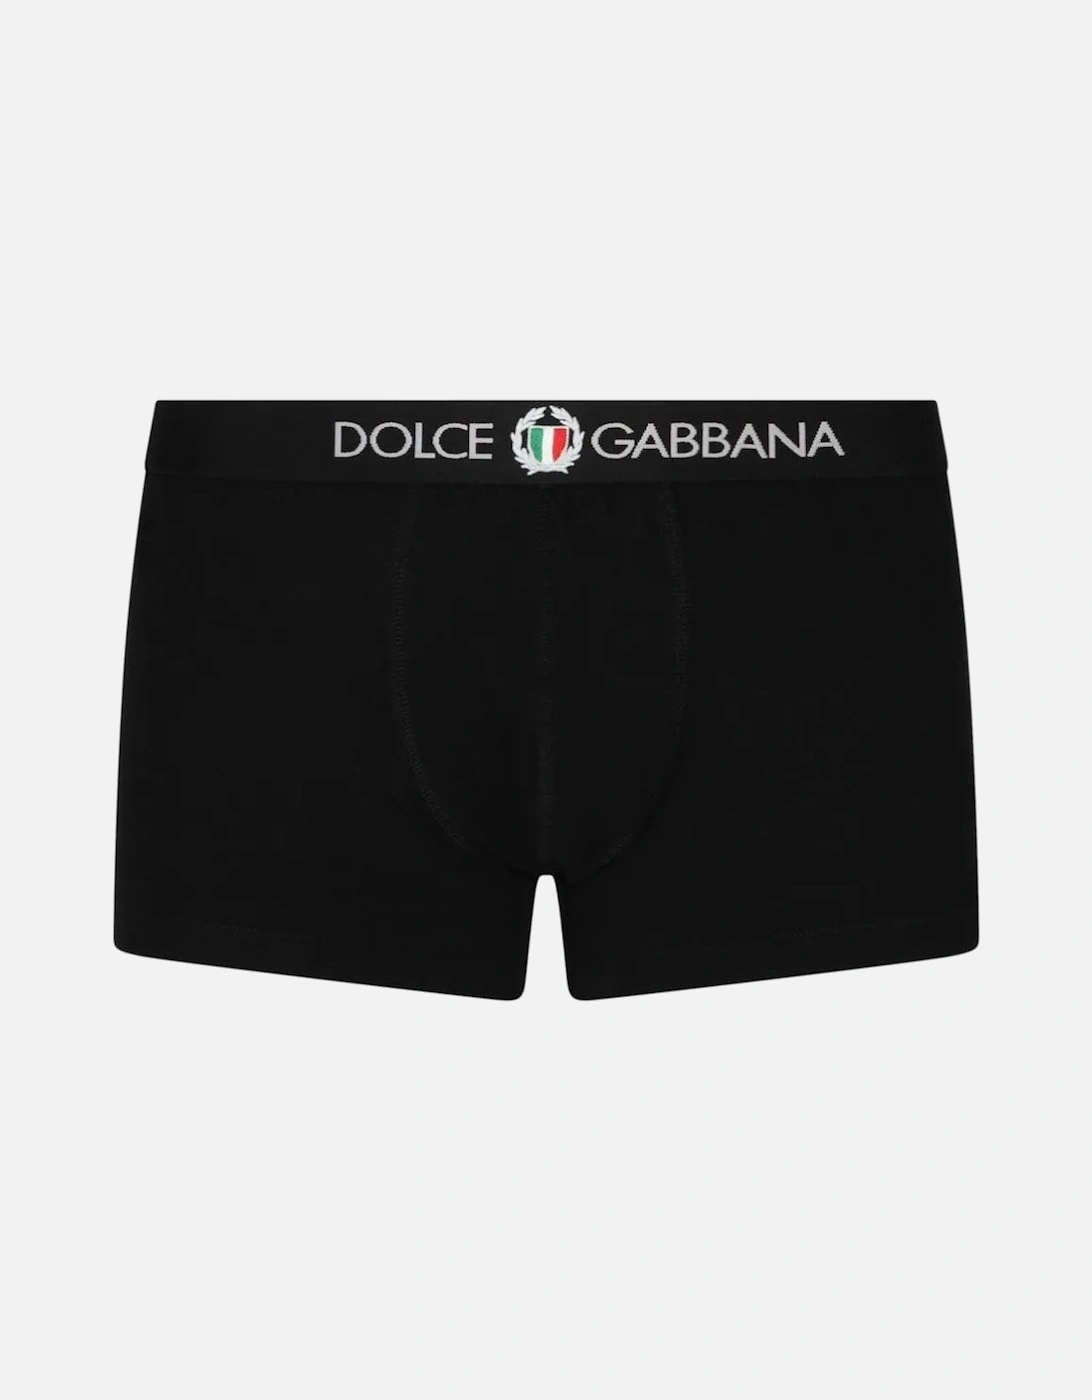 DG Crest Boxer Shorts Black, 4 of 3